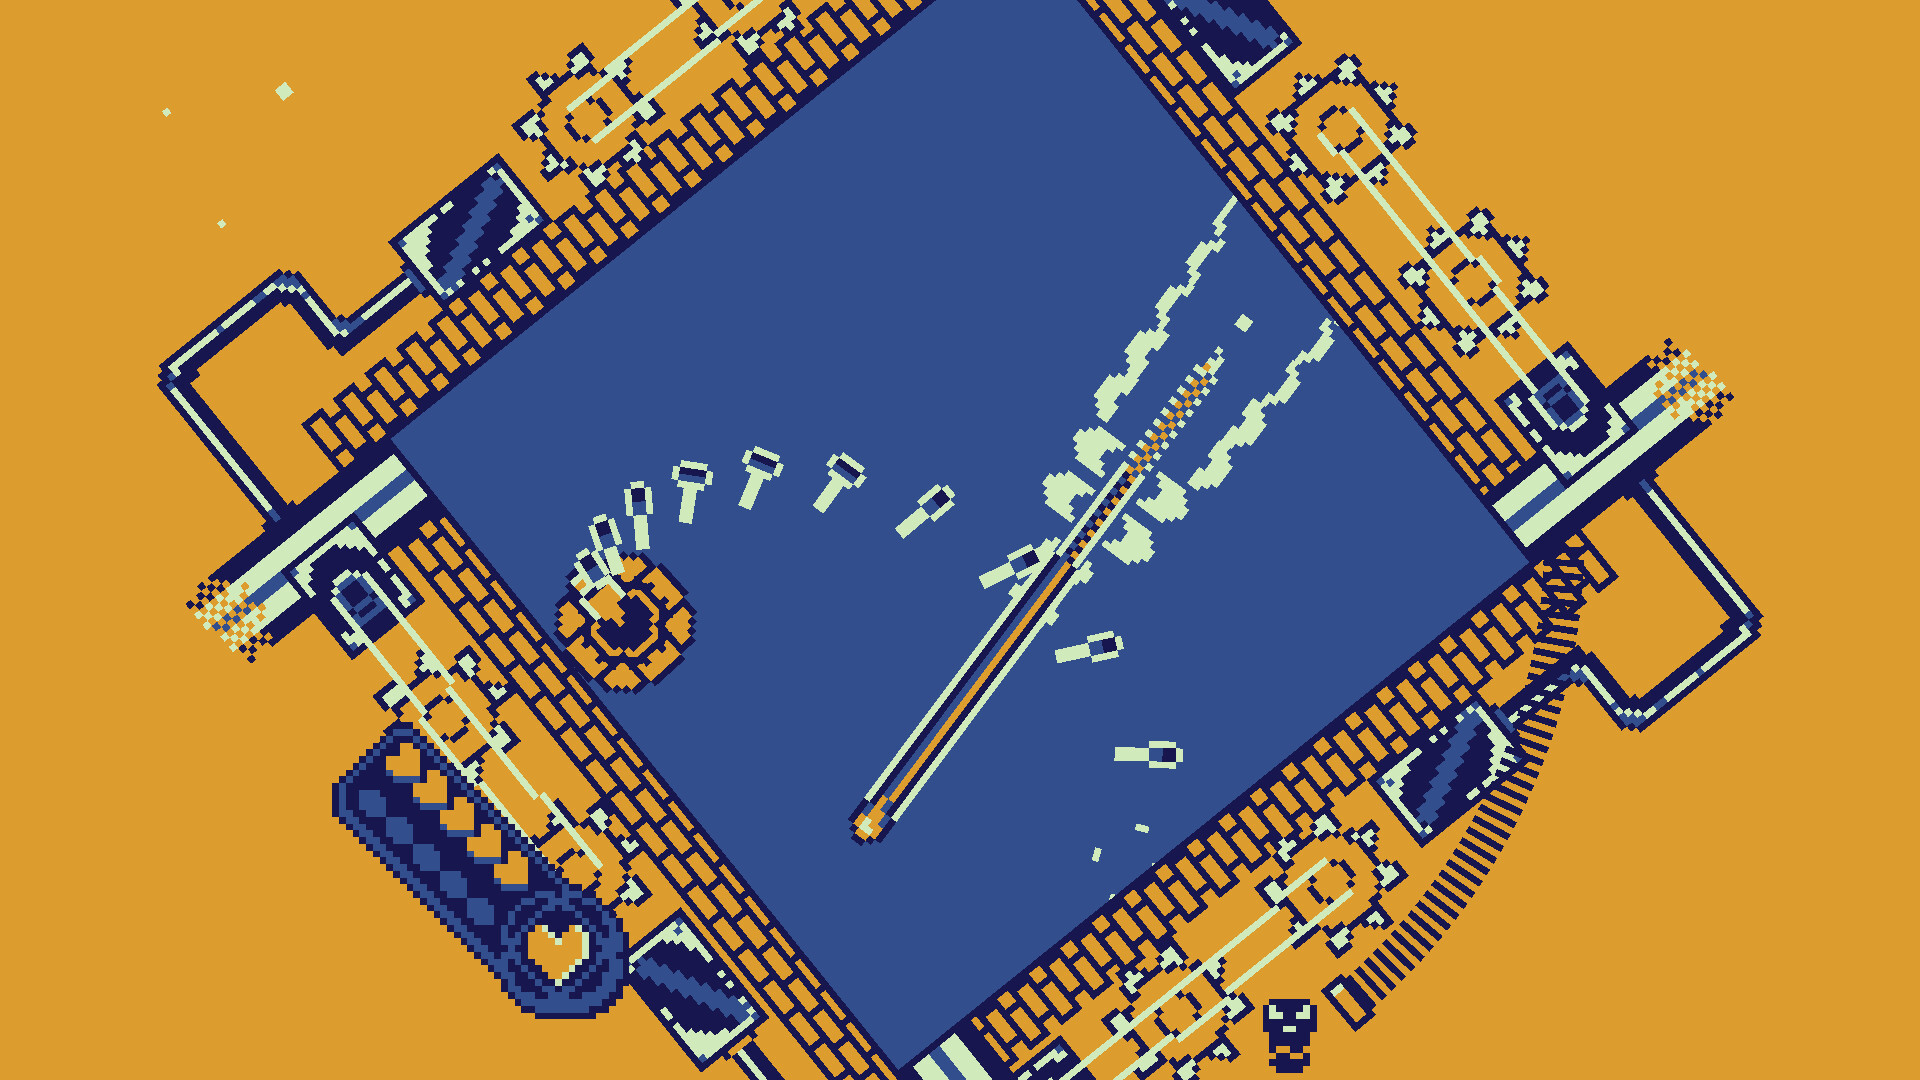 Скриншот обзора игры Roto Force - голубой квадрат содержит вас и ваши ракеты на фоне горчично-желтого фона